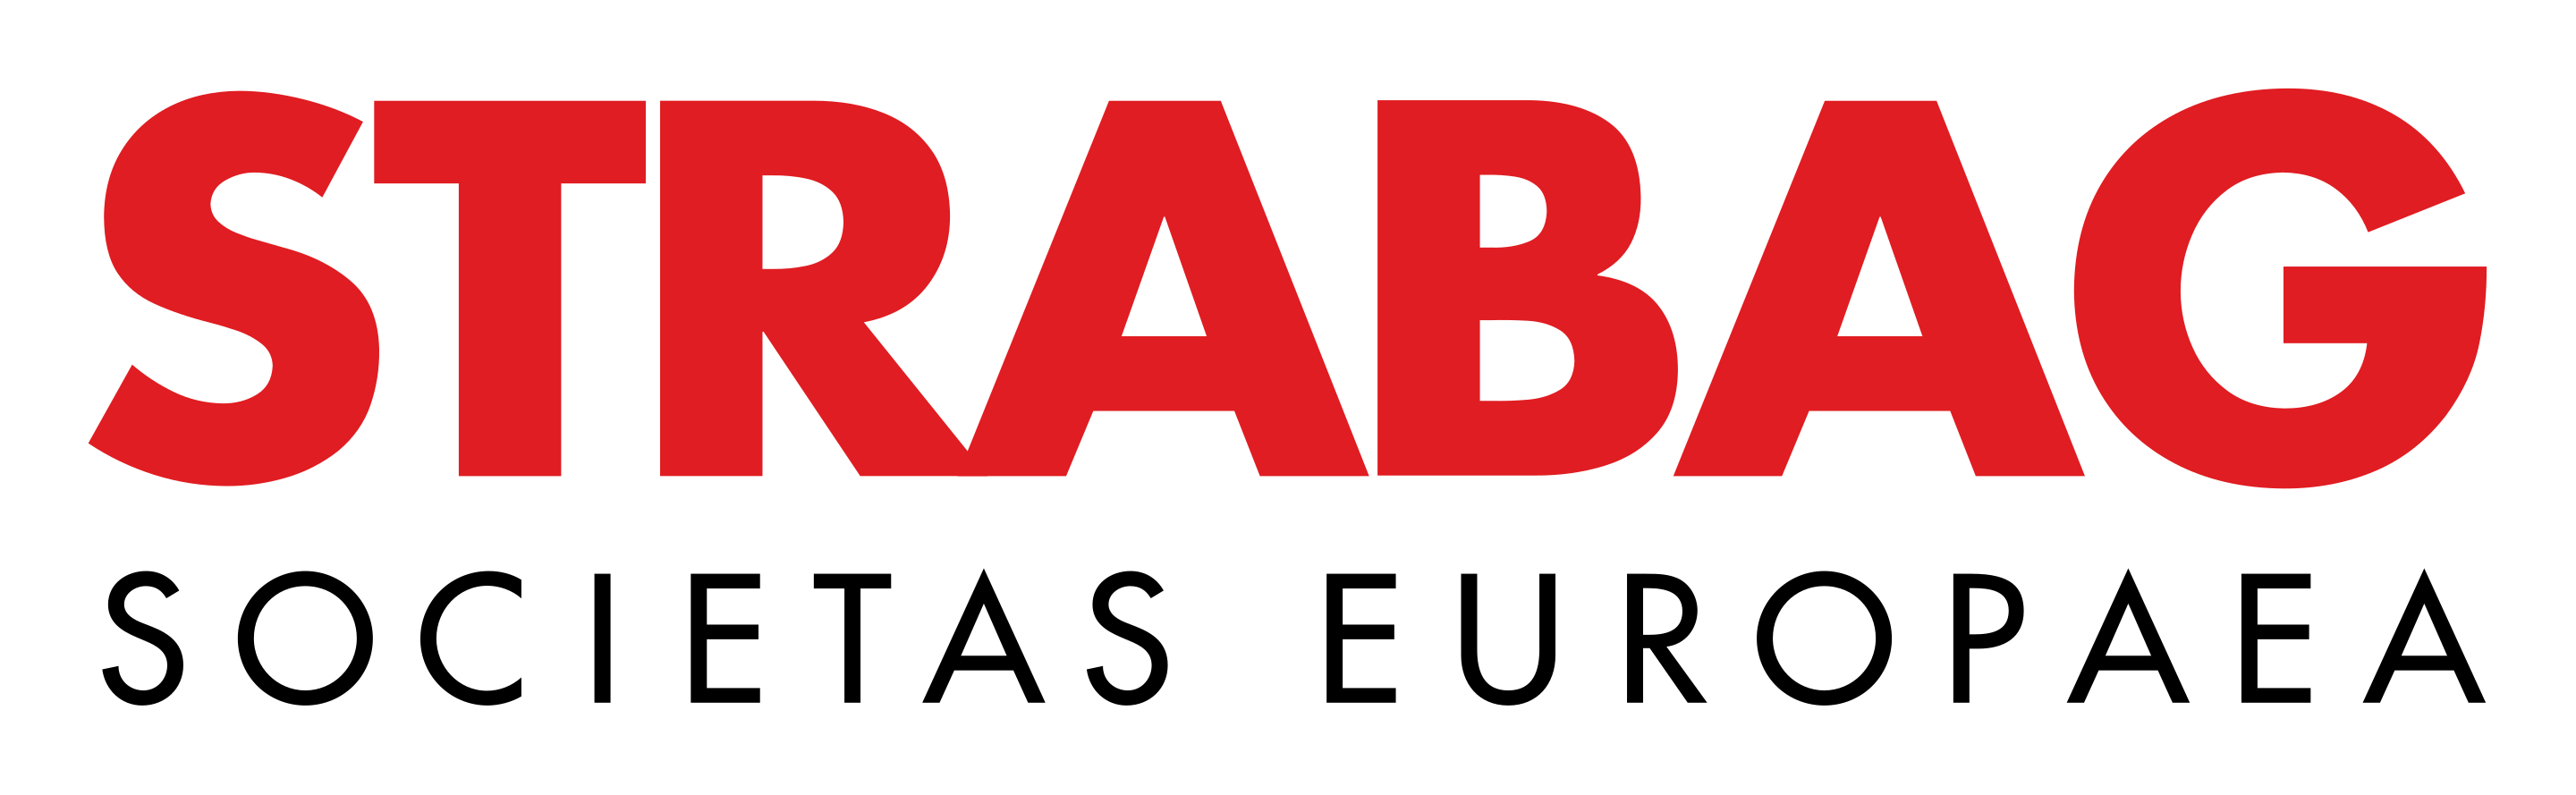 Strabag-logo